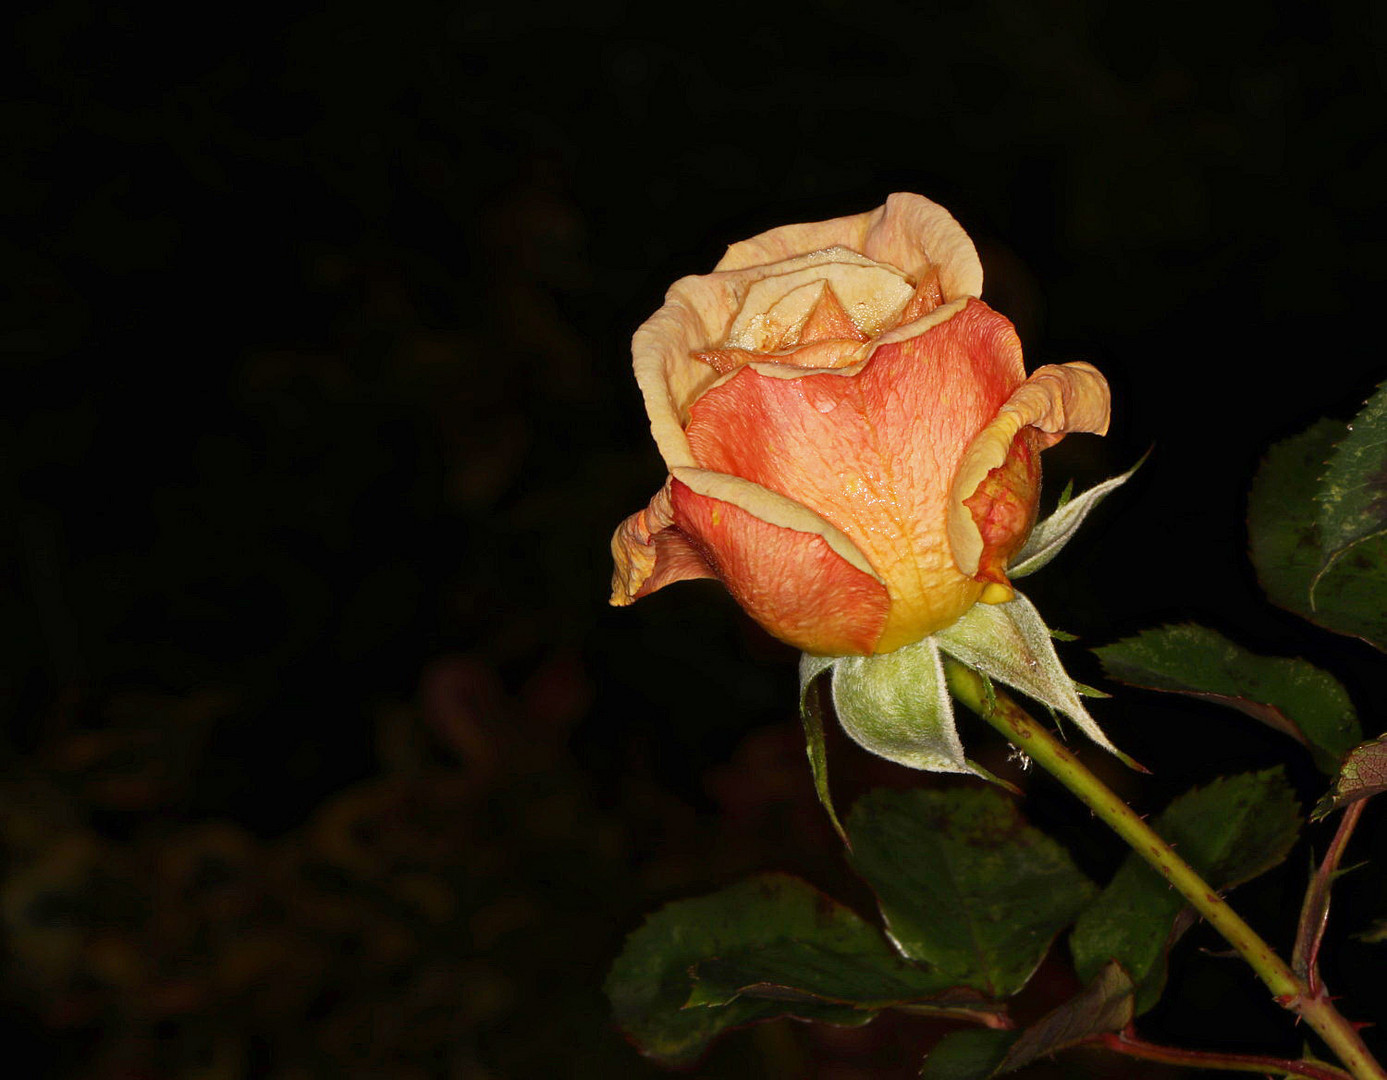 die letzte Rose im Garten